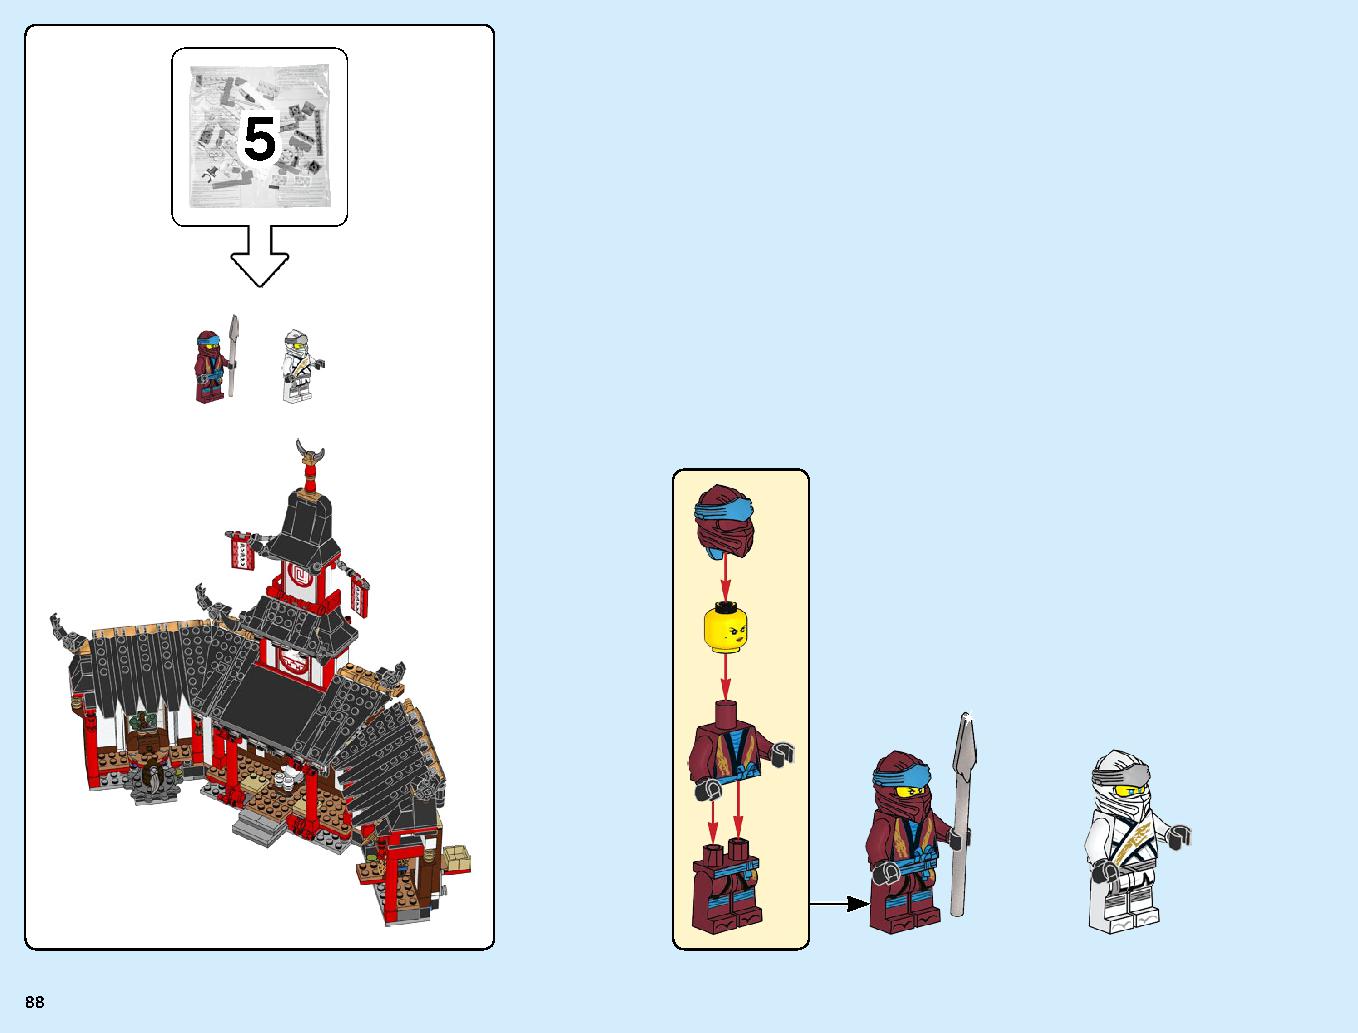 ニンジャ道場 70670 レゴの商品情報 レゴの説明書・組立方法 88 page